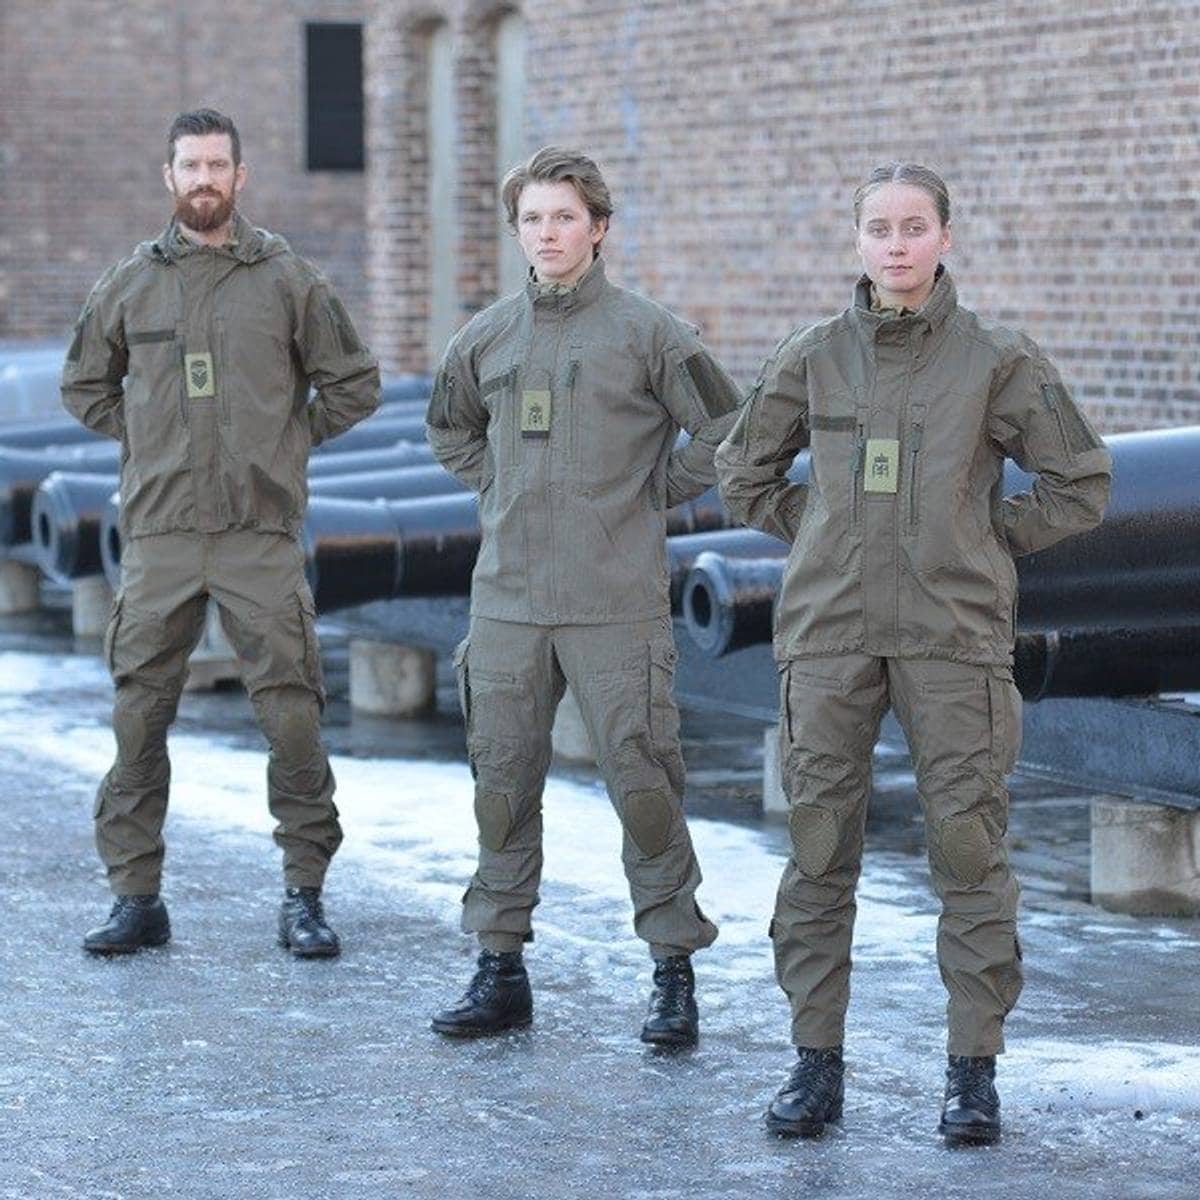 Udvalg afrikansk eftermiddag Norge, Sverige, Danmark og Finland får samme militær uniform – NRK Trøndelag